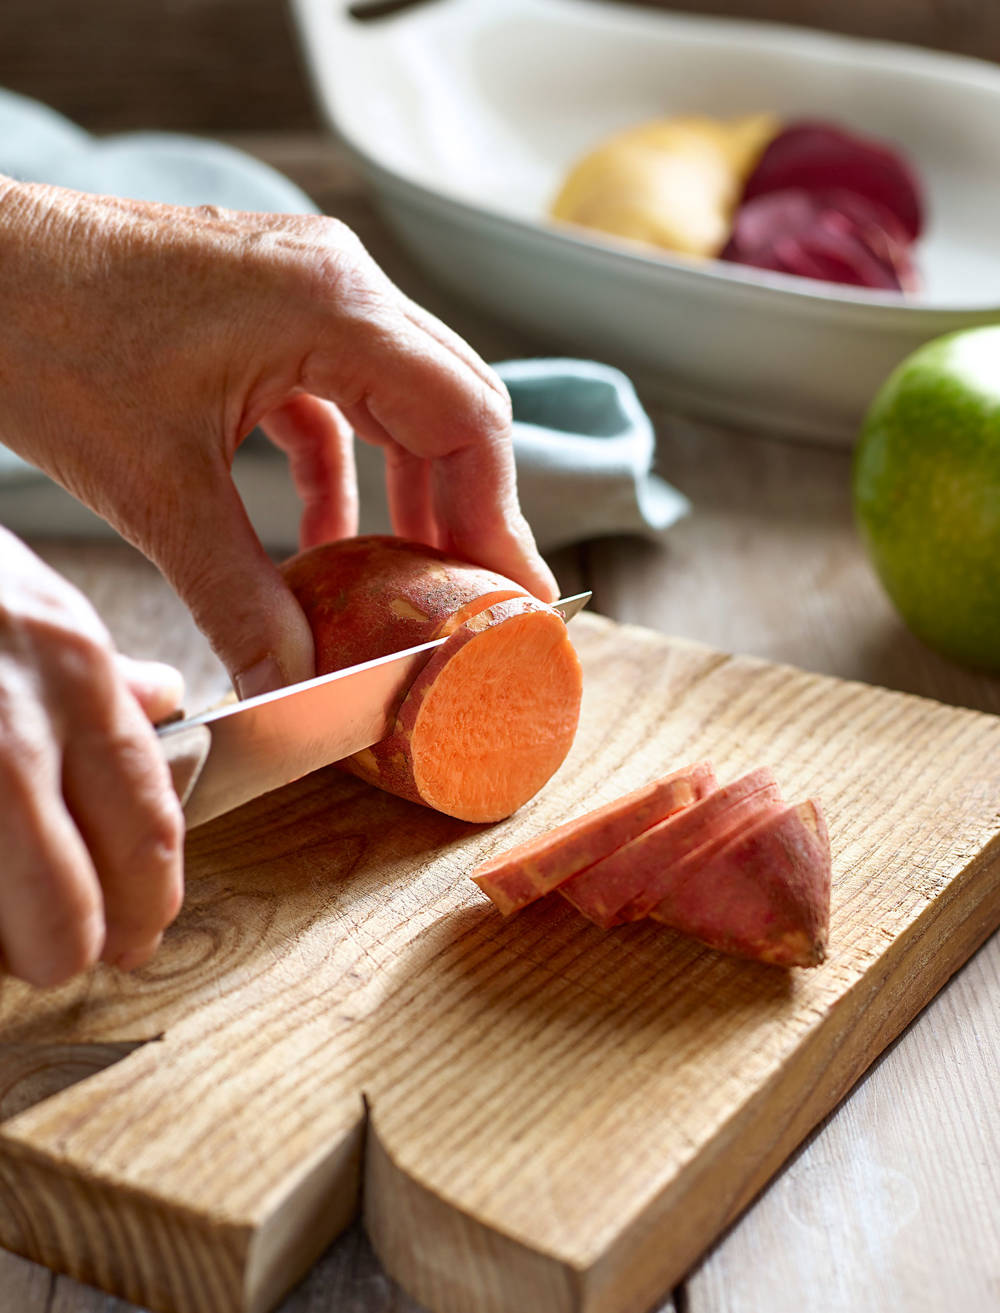 Trucos para afilar los cuchillos de la cocina sin utensilios